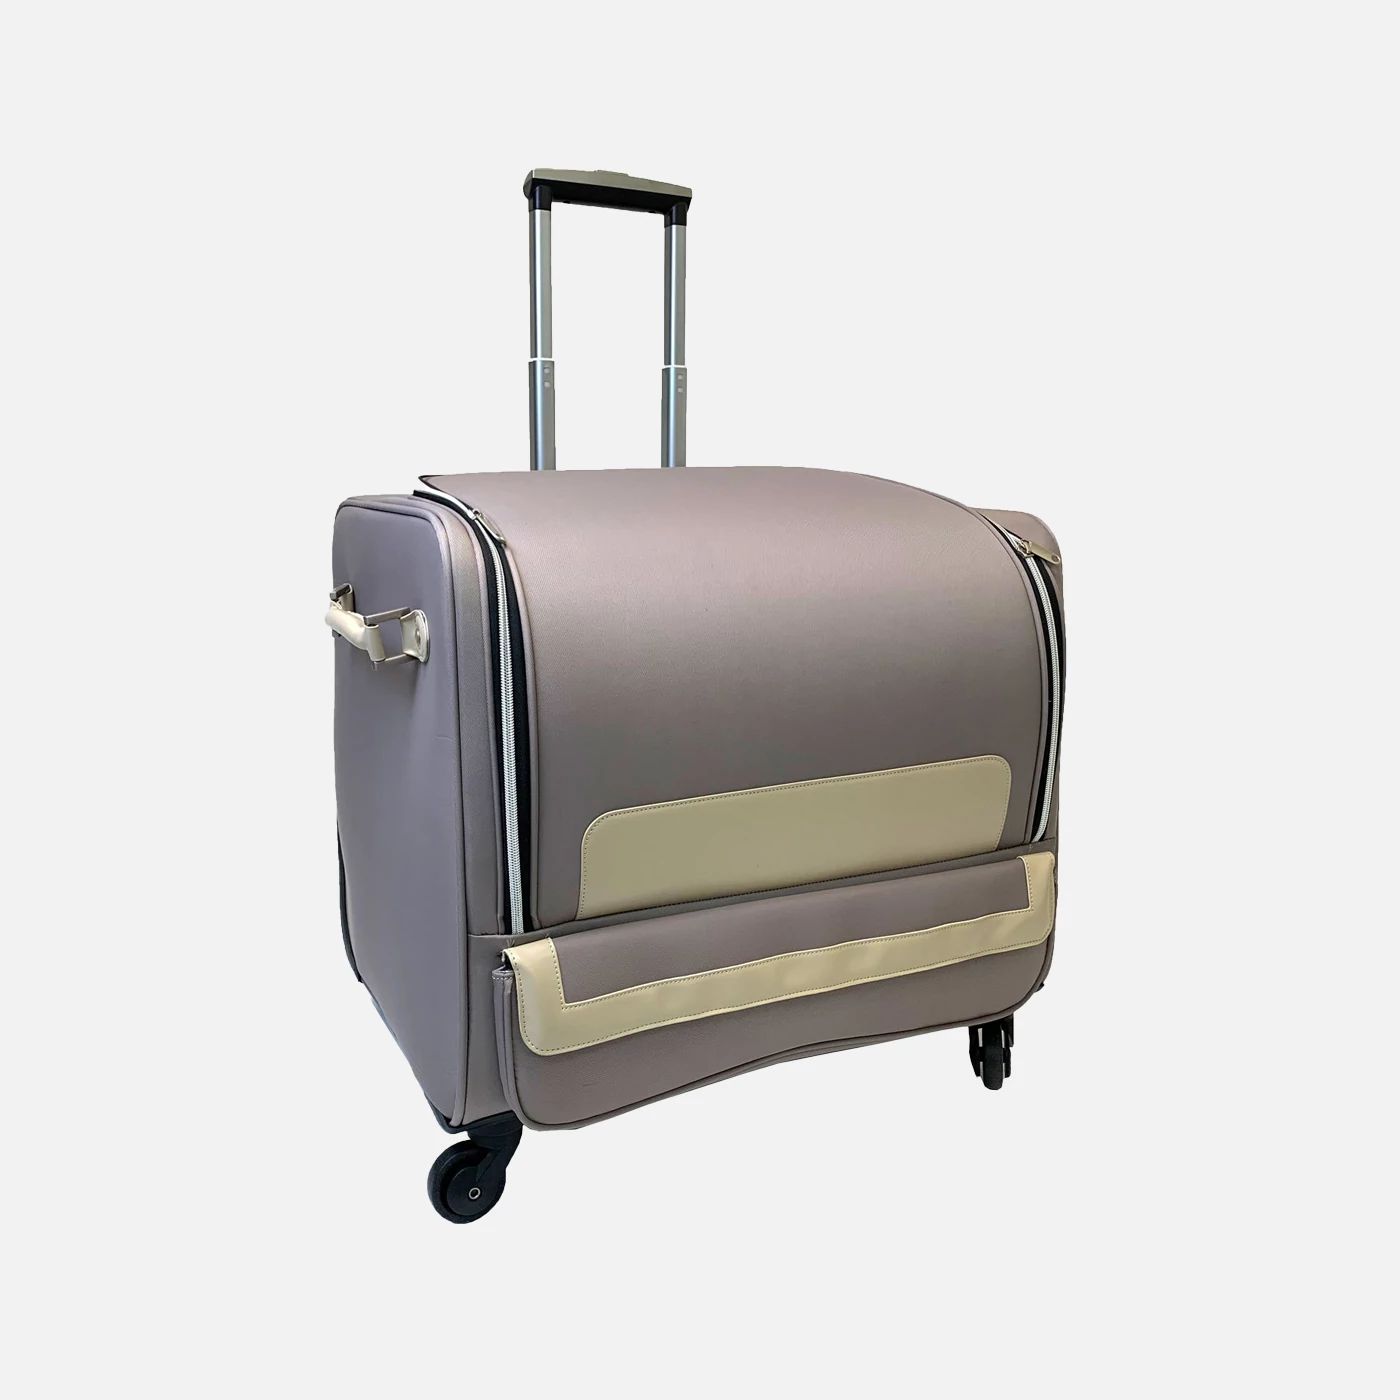 Pfaff Machine Bag (Serger) - Luxe Collection Serger Roller Bag (XL) -  821279096